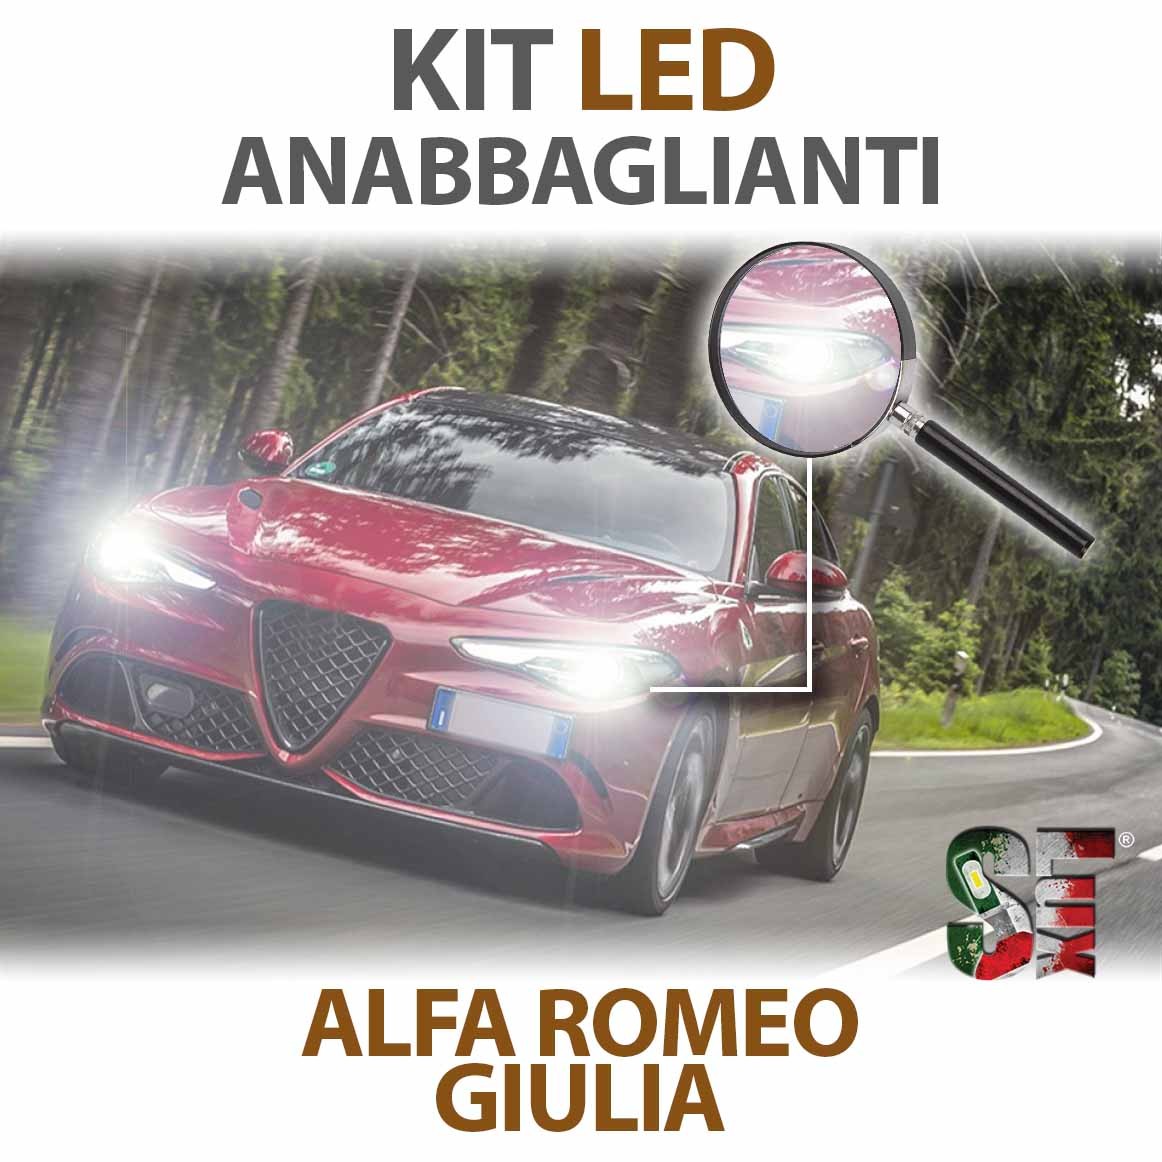 Kit LED H7 -   La tua auto Full LED